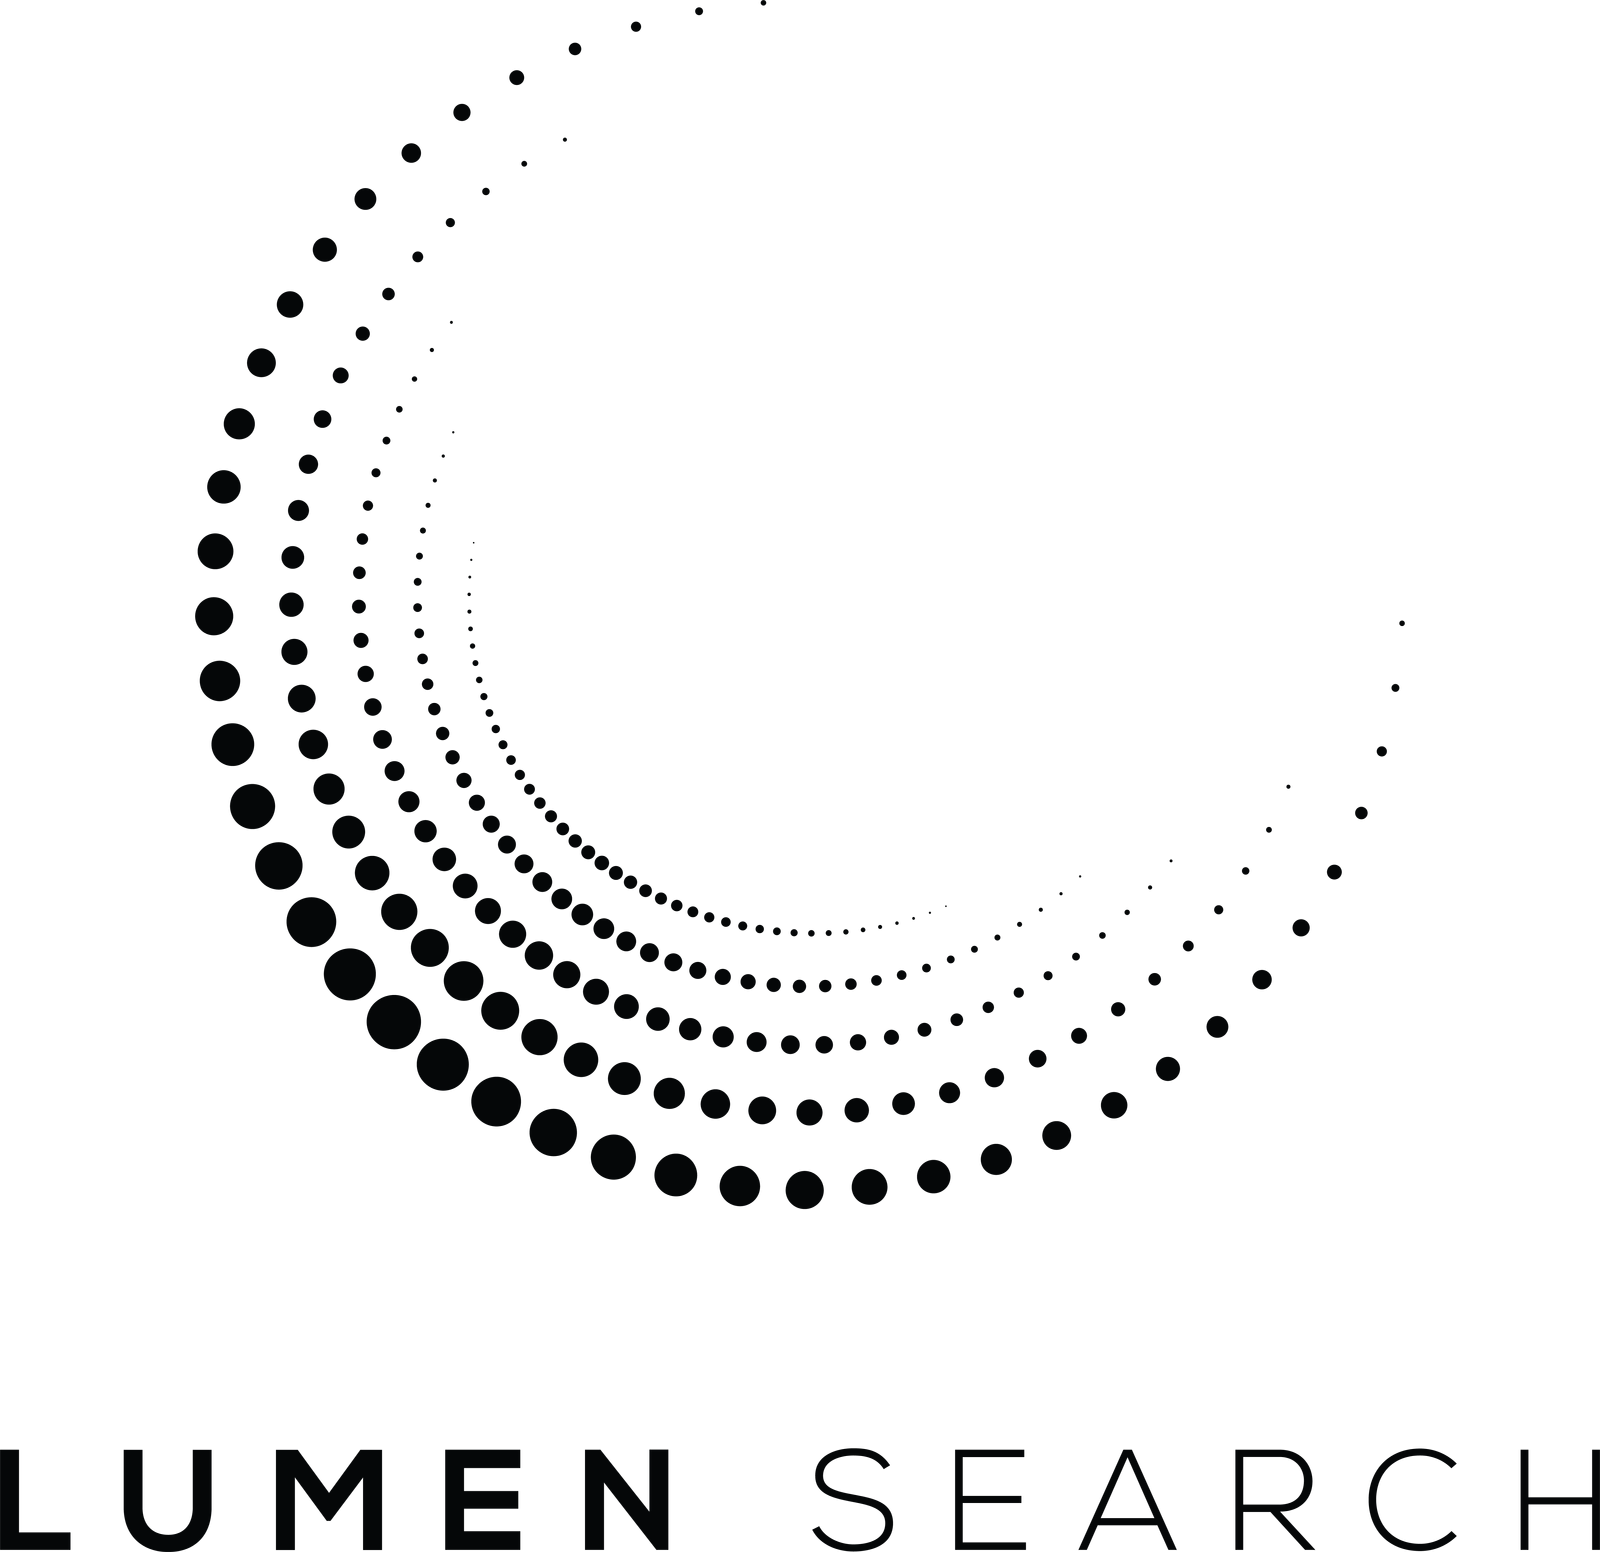 Lumen Search